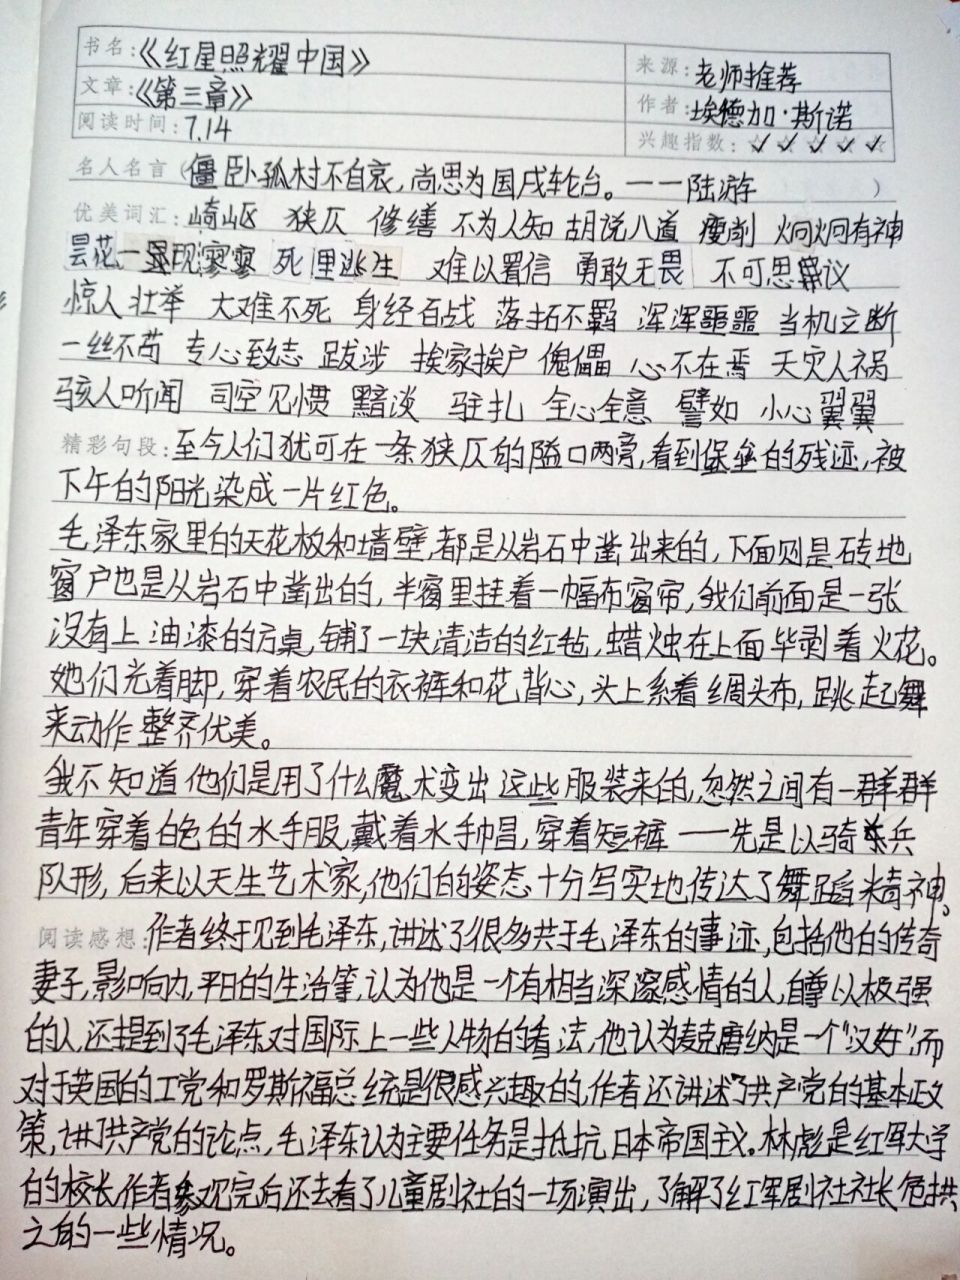 《红星照耀中国》读书笔记第三章  第三章